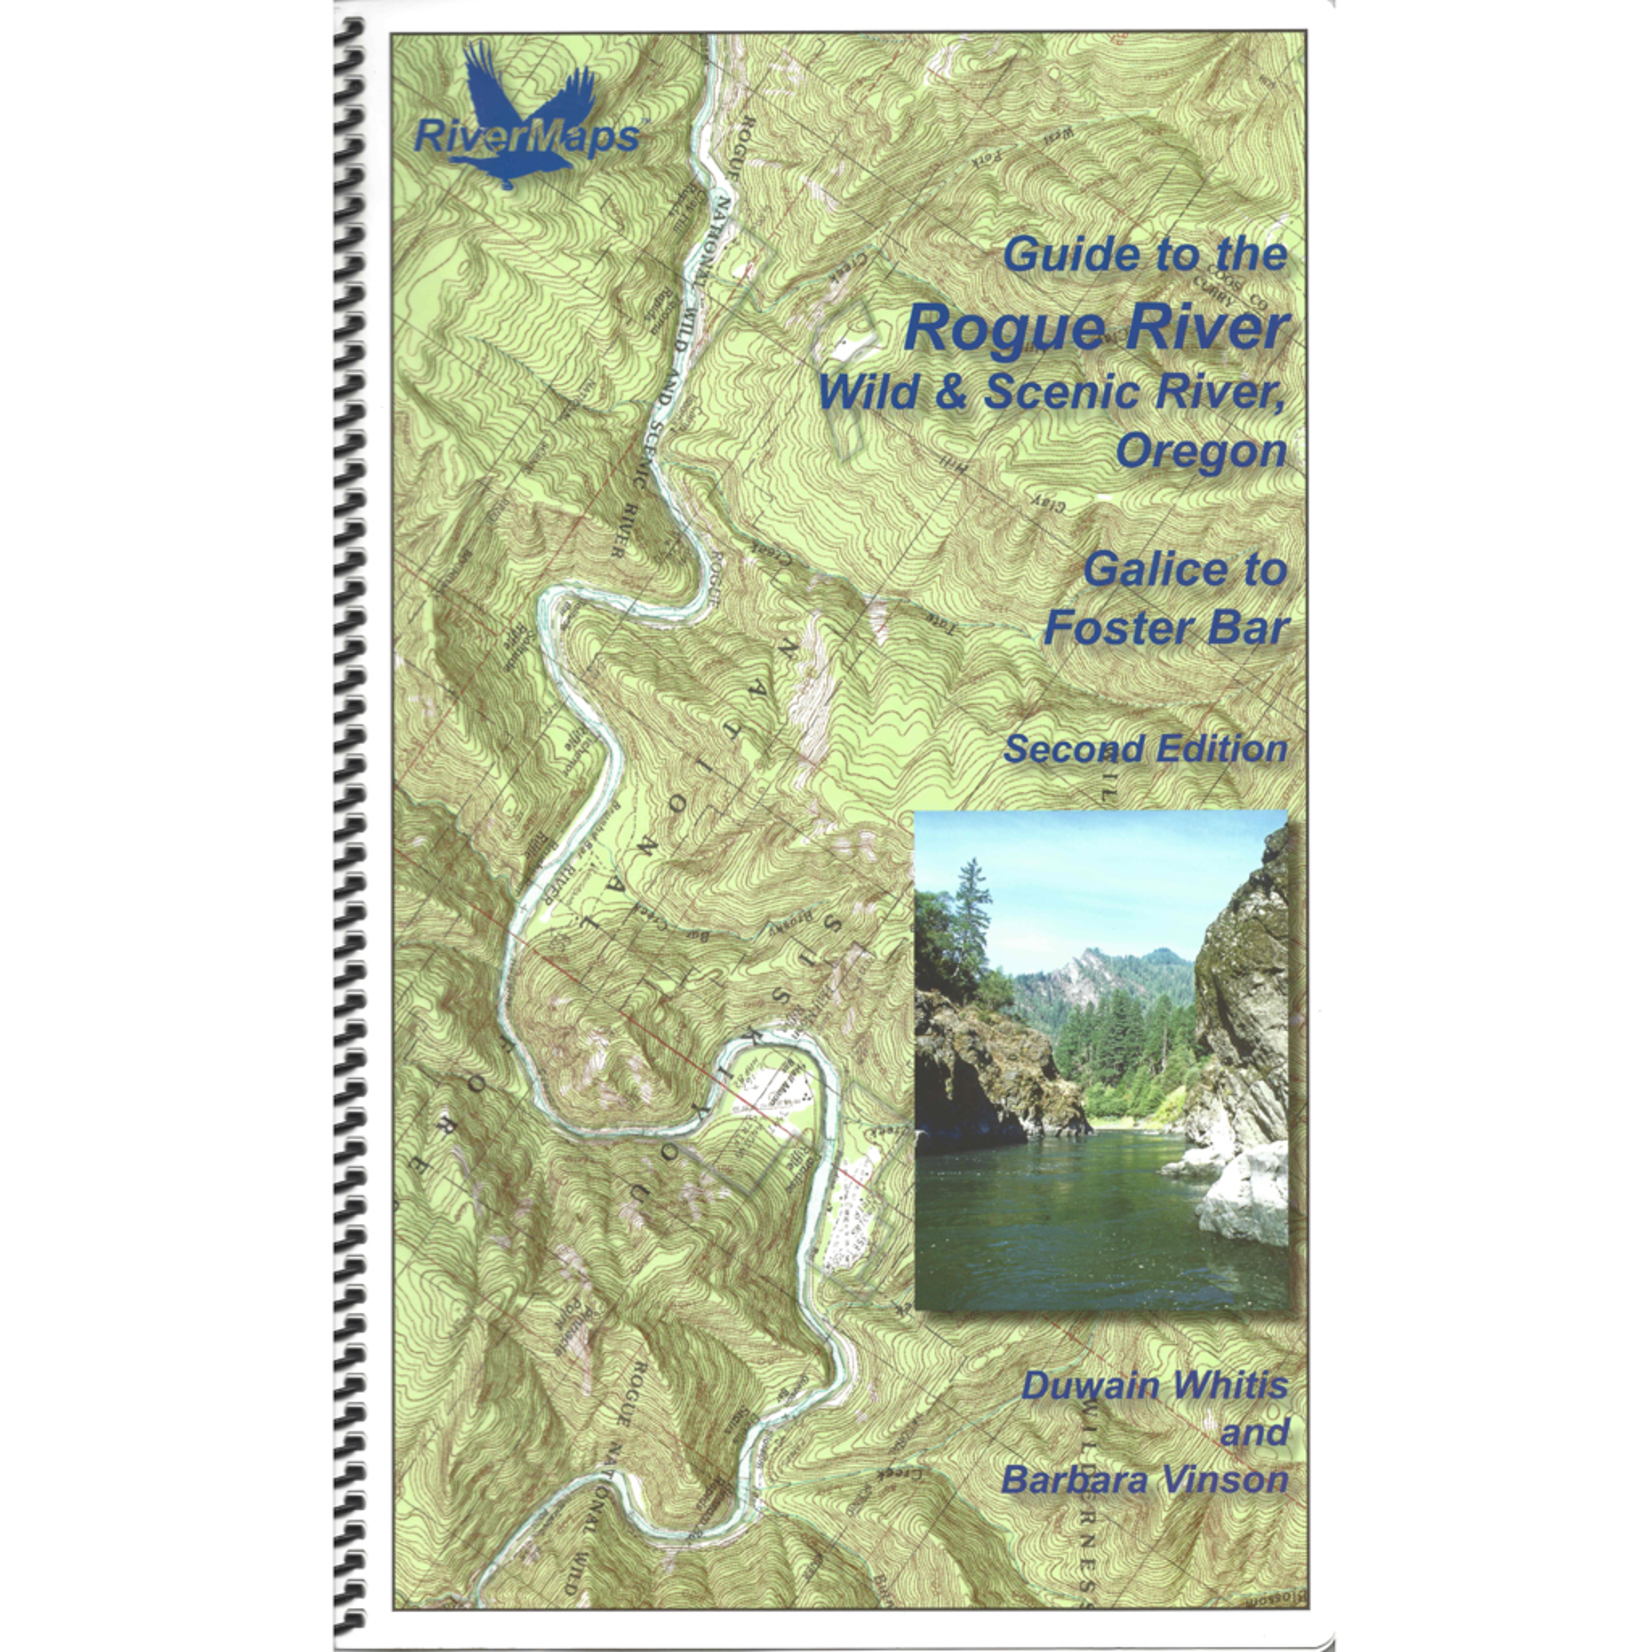 RiverMaps Guide To Rogue River Oregon Wild & Scenic